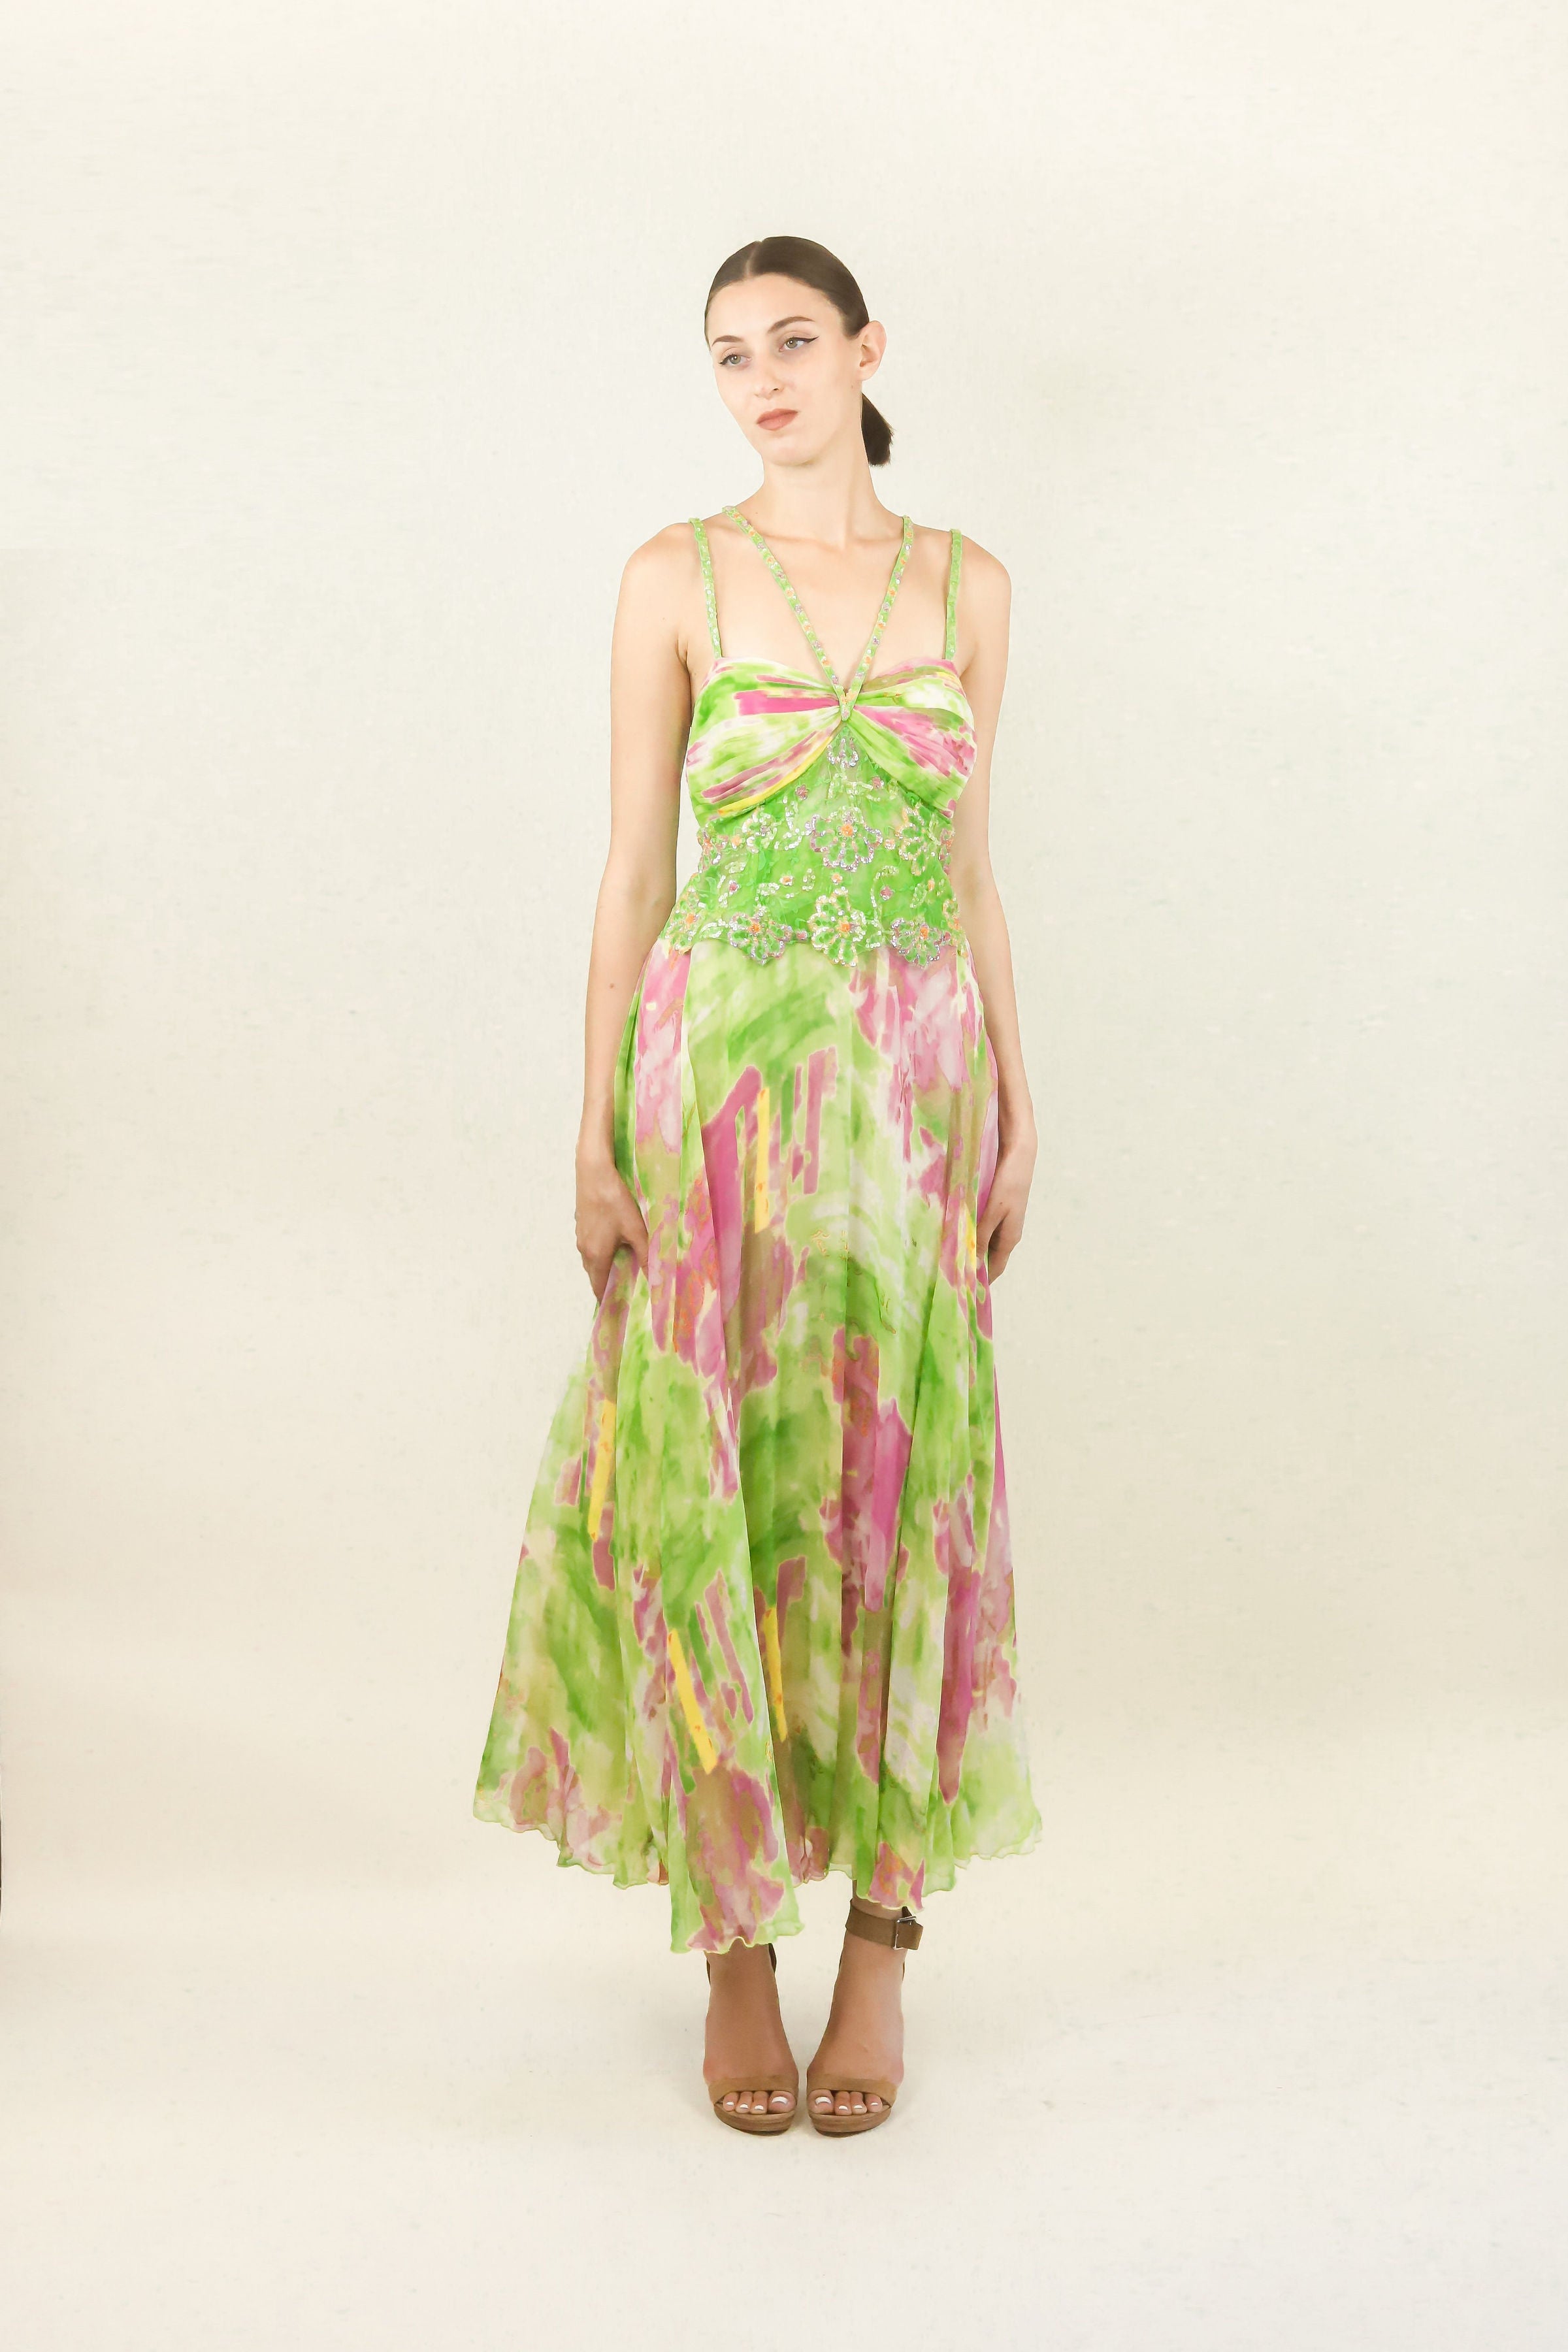 Diane Freis Silk Chiffon Beaded Dress – The Kit Vintage